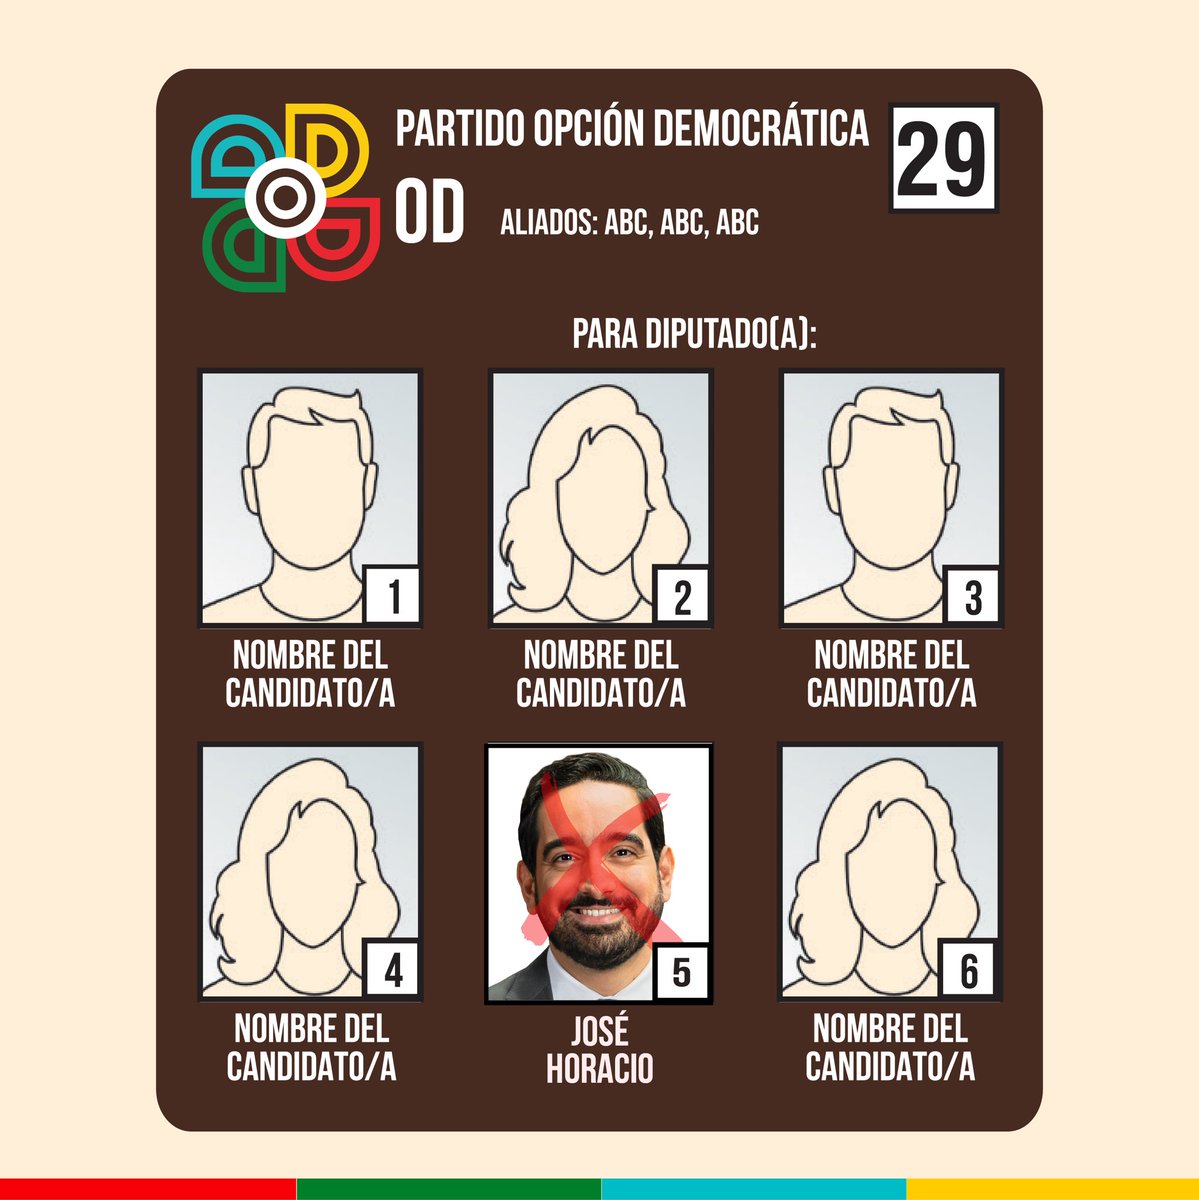 Jose Horacio en la boleta electoral. 👇

@JoseHoracioR 

#Vota29 #OpcionDemocratica #MasBuenaPolitica 
#DemocraciaRD #EleccionesRD #RDPolítica